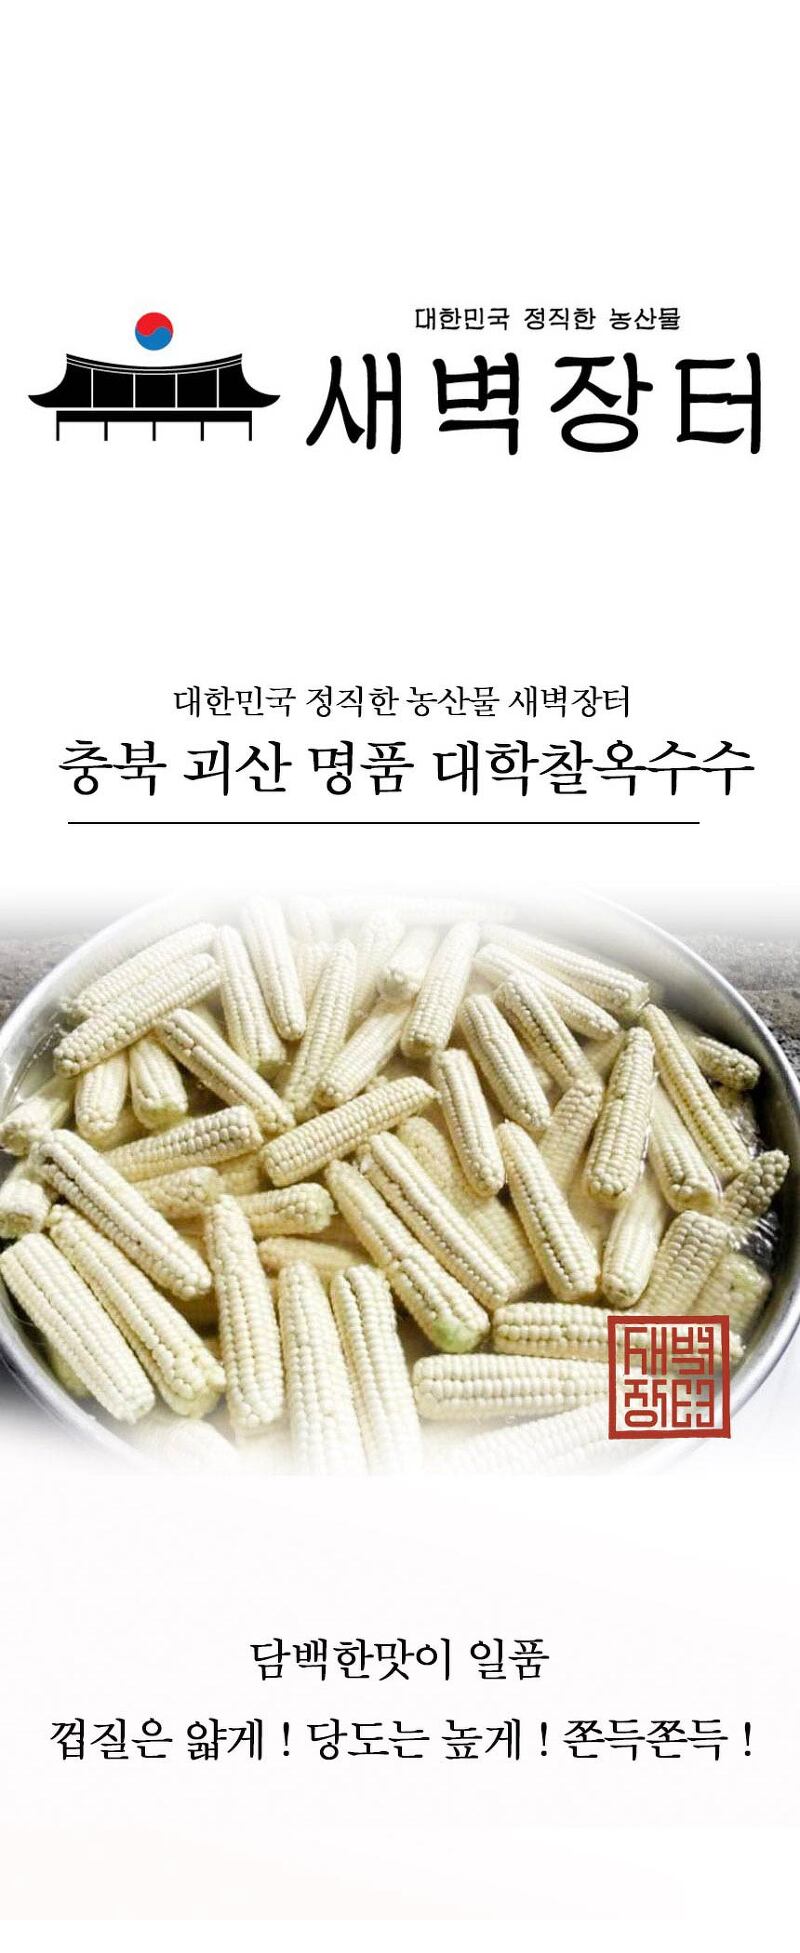 새벽장터 충북 괴산 대학찰옥수수 맛집 !